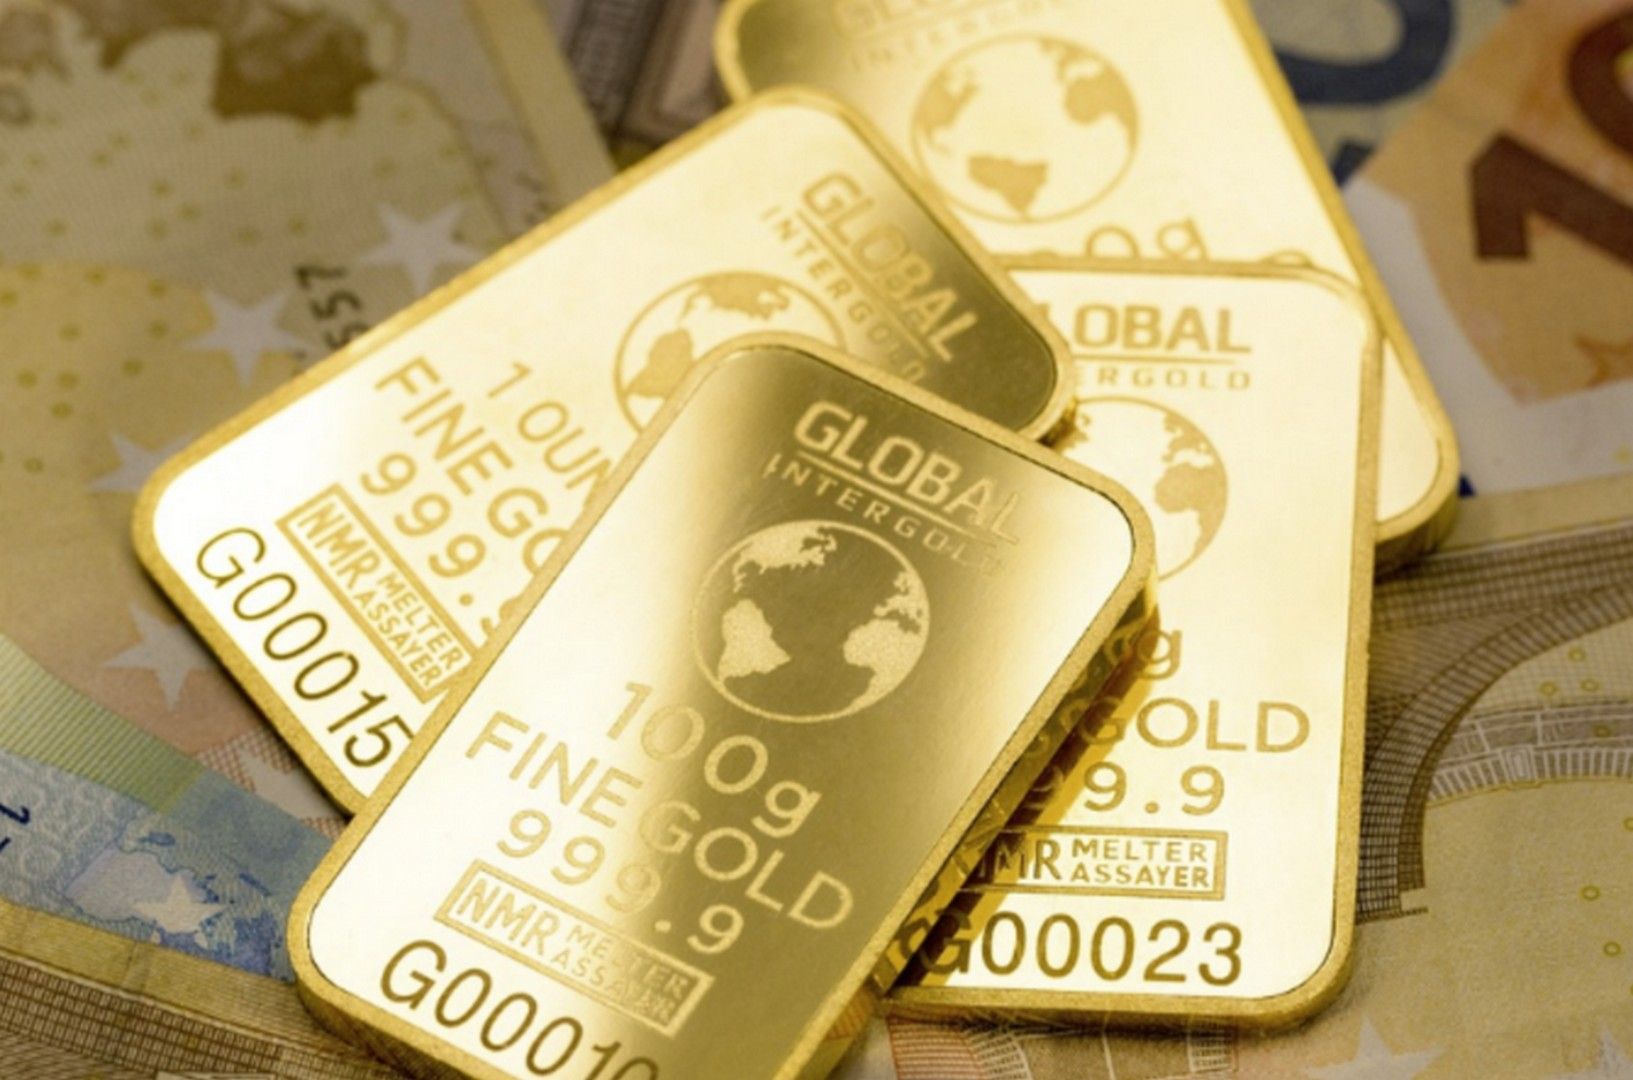 ilustrasi emas Toko Emas Terbaik di Cimahi Harga Terjangkau, Produk Terlengkap dan Terpercaya, Cek Lokasi? /Pixabay.com